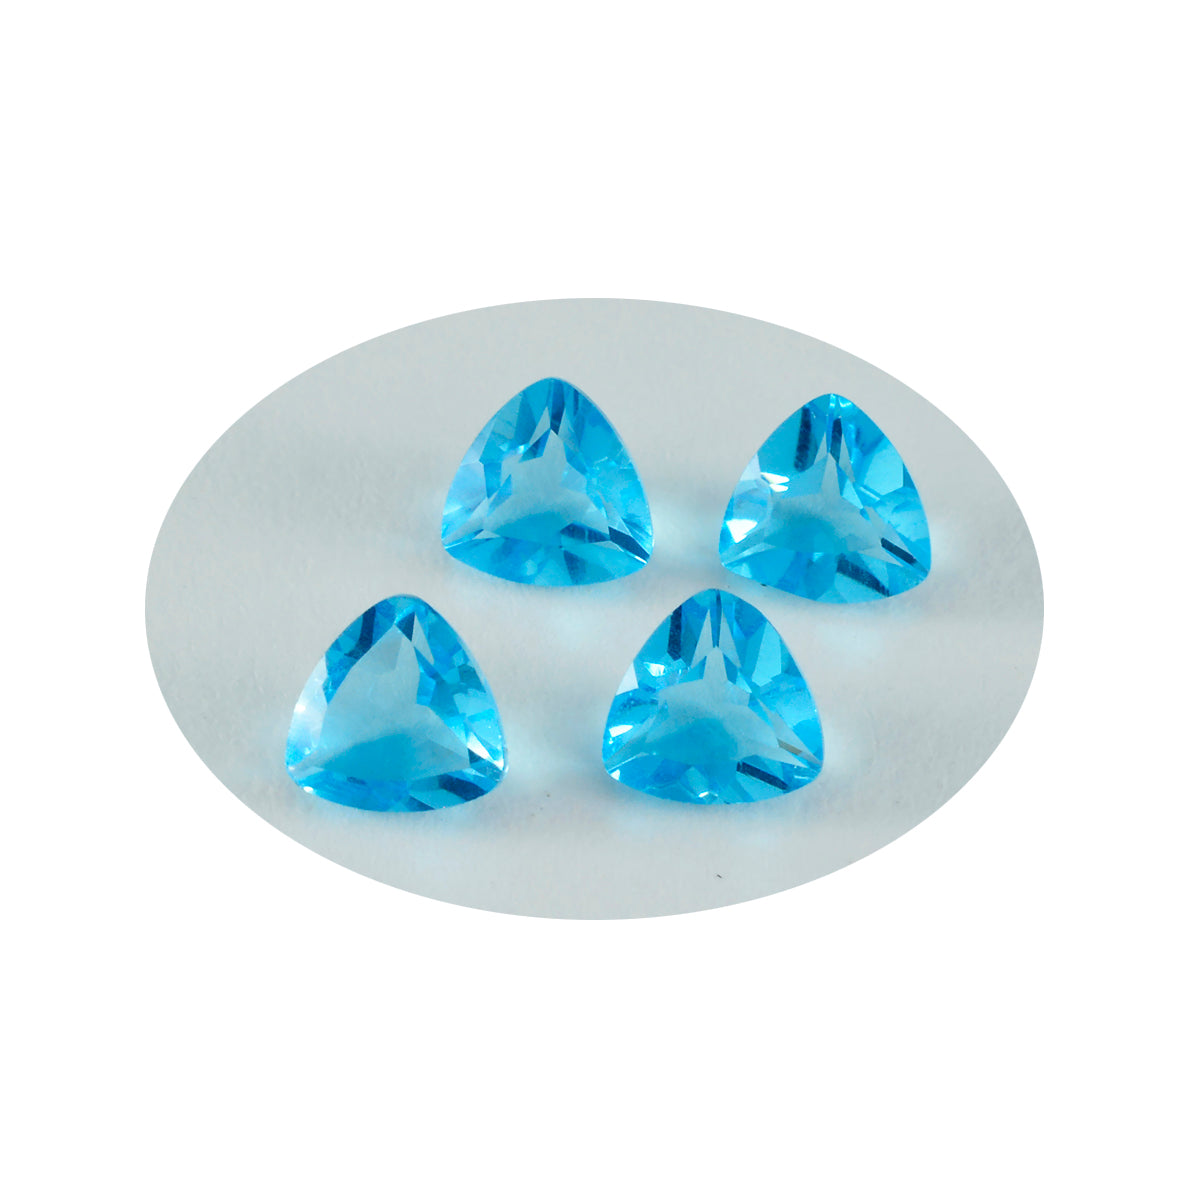 riyogems 1шт синий топаз cz ограненный 9x9 мм форма триллиона драгоценный камень превосходного качества